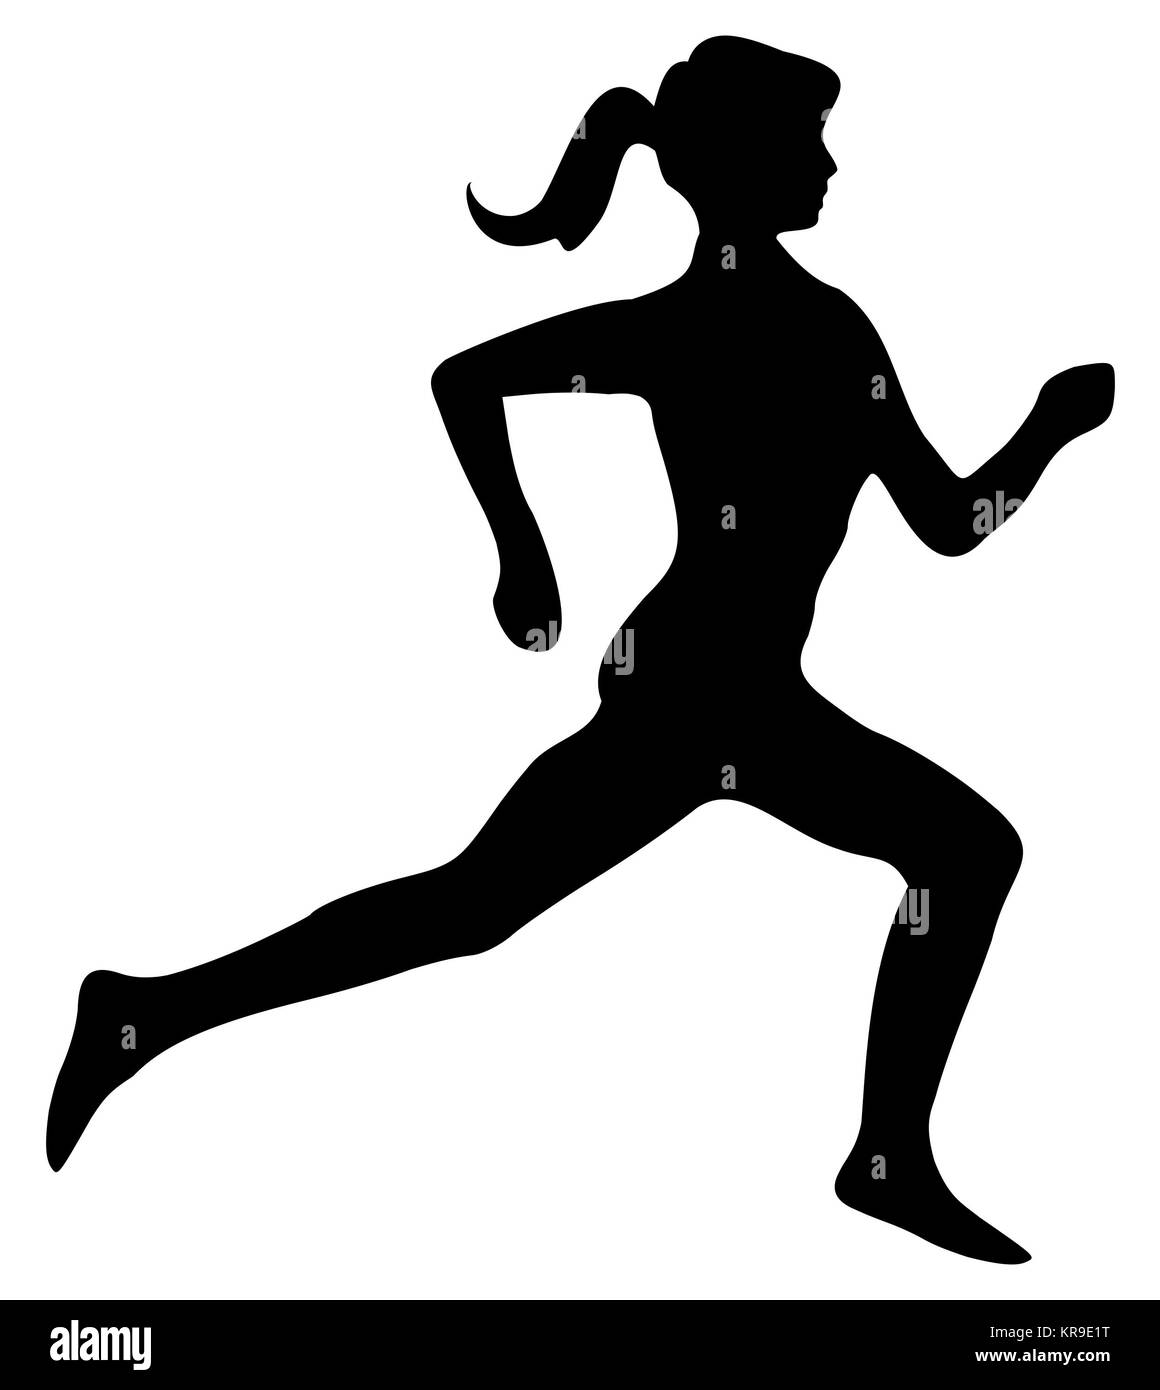 female runner jogger Silhouette - illustration Stock Photo